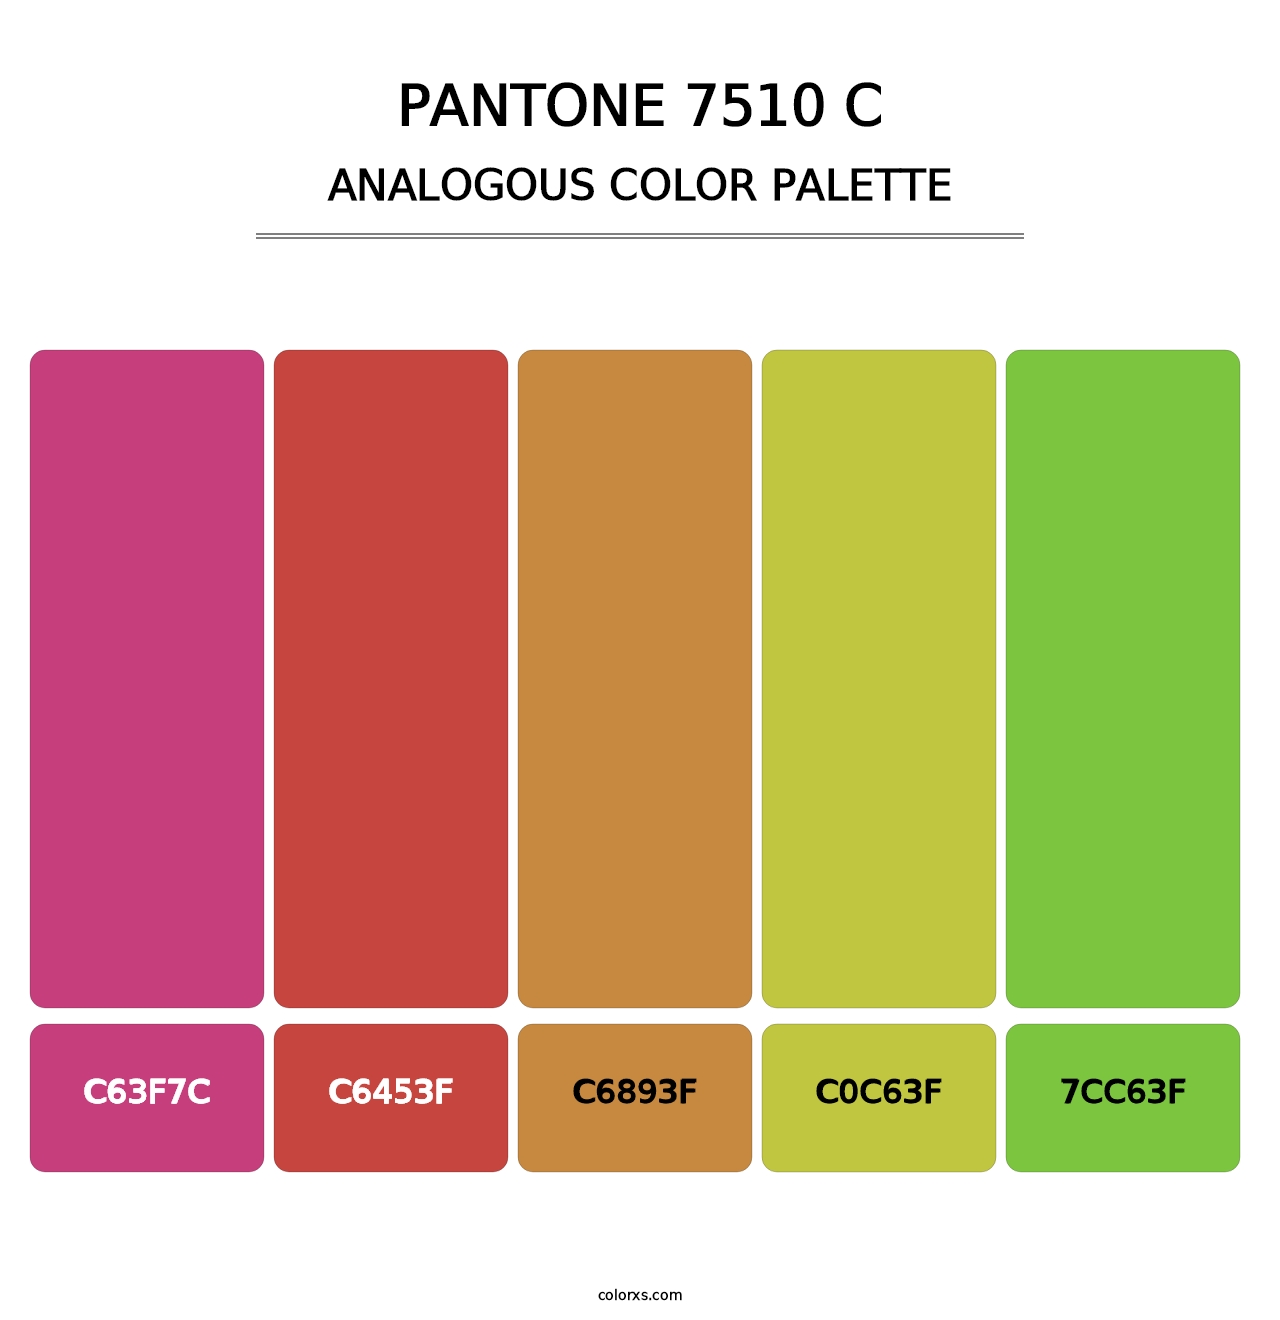 PANTONE 7510 C - Analogous Color Palette